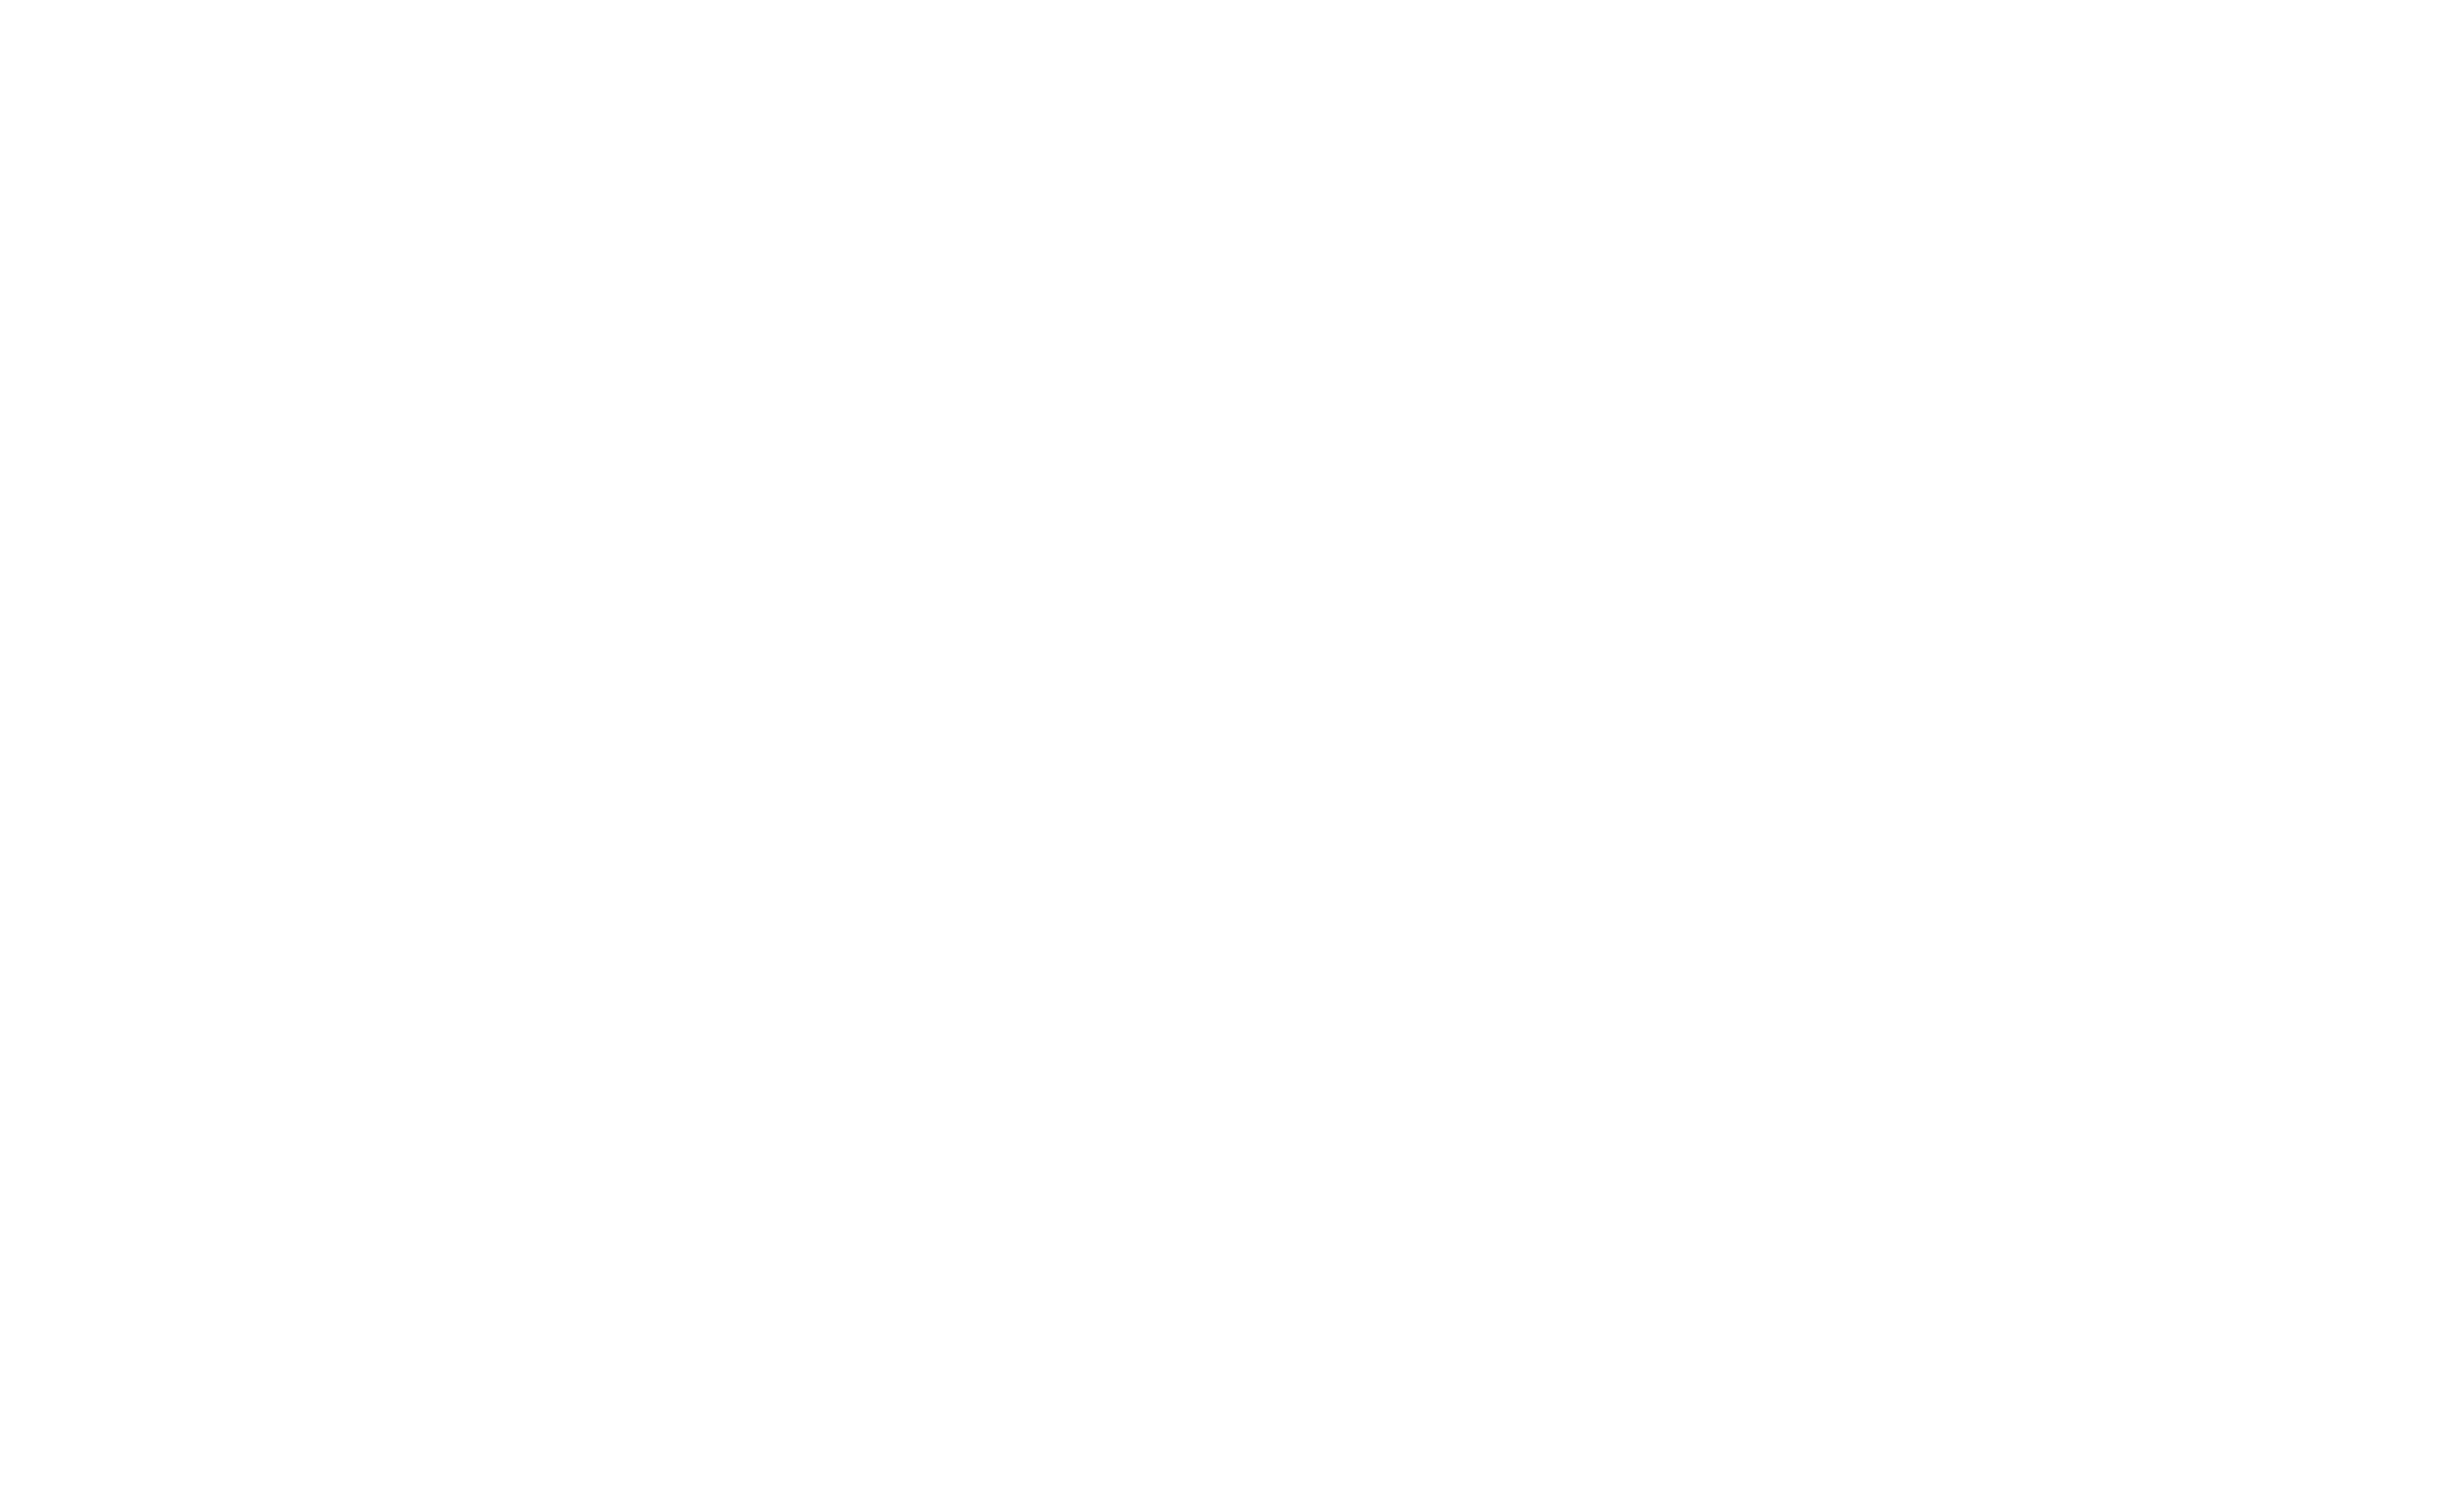 ConorClark.mp4